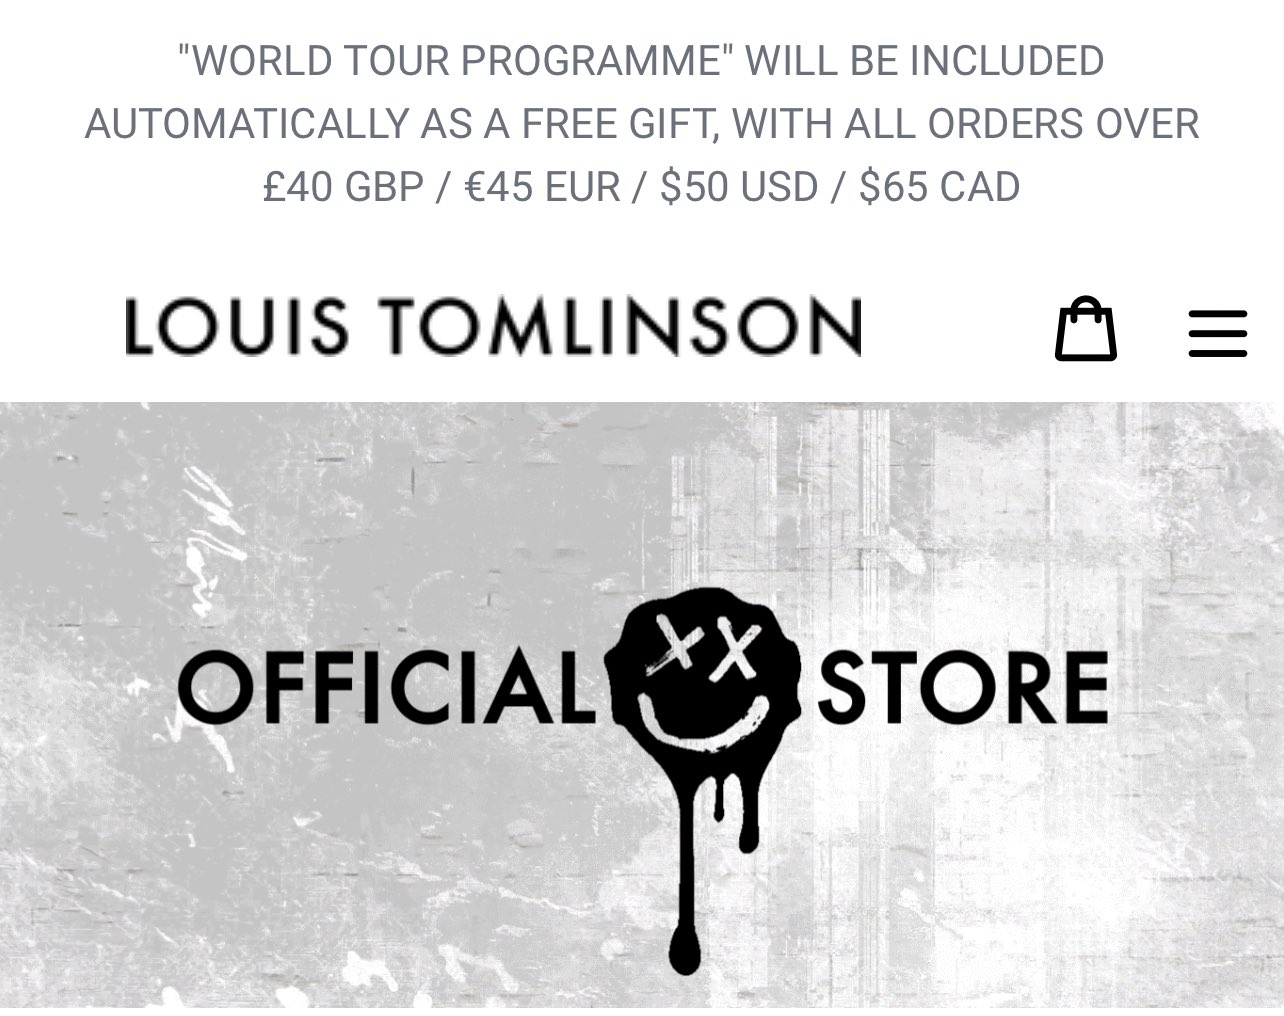 Louis Tomlinson News on X: #Update